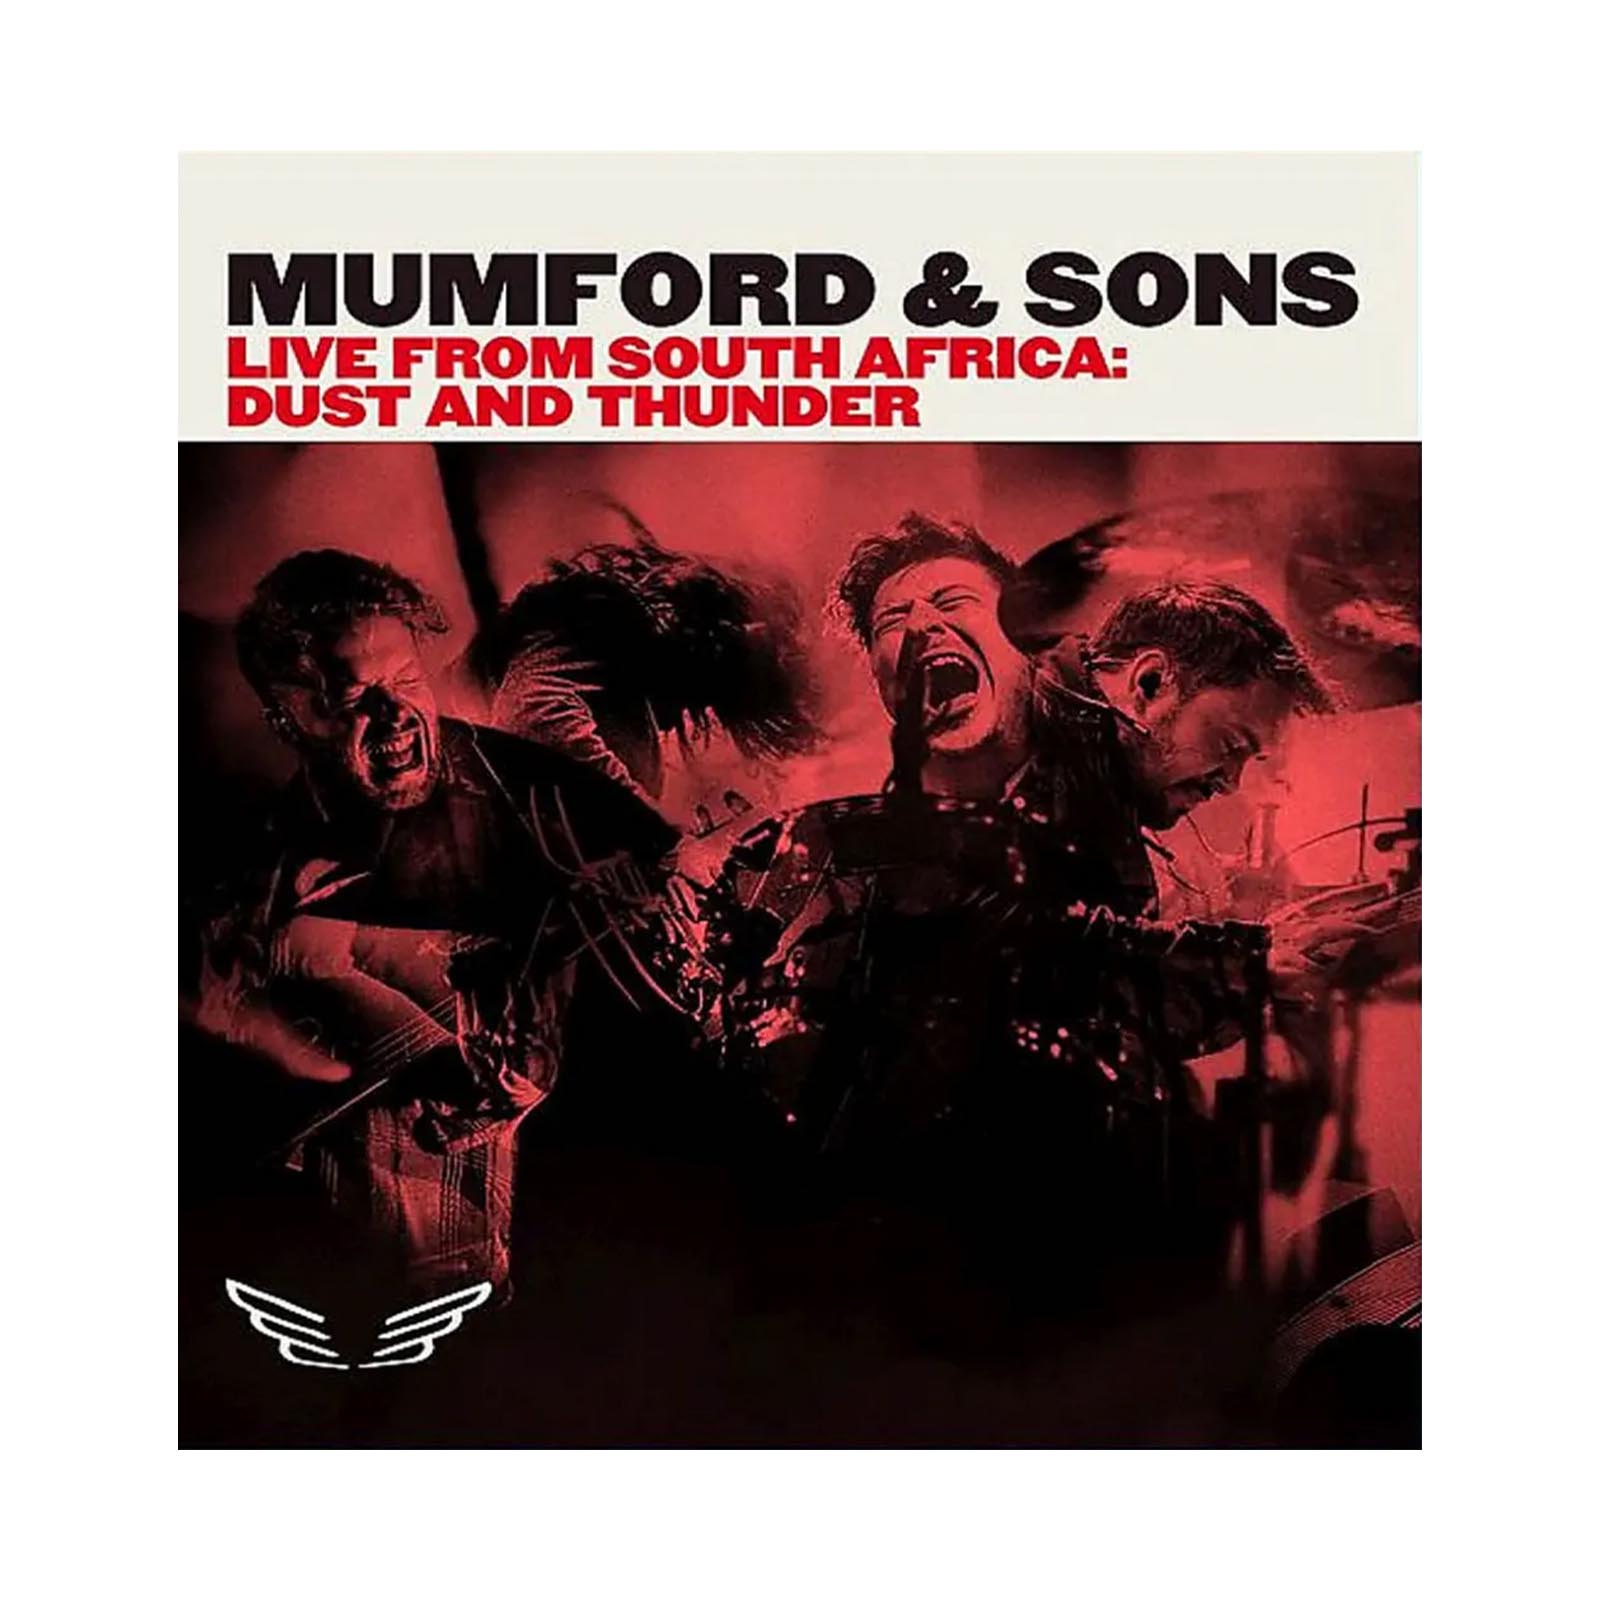 Mumford & Sons – na żywo w Republice Południowej Afryki: Dust And Thunder